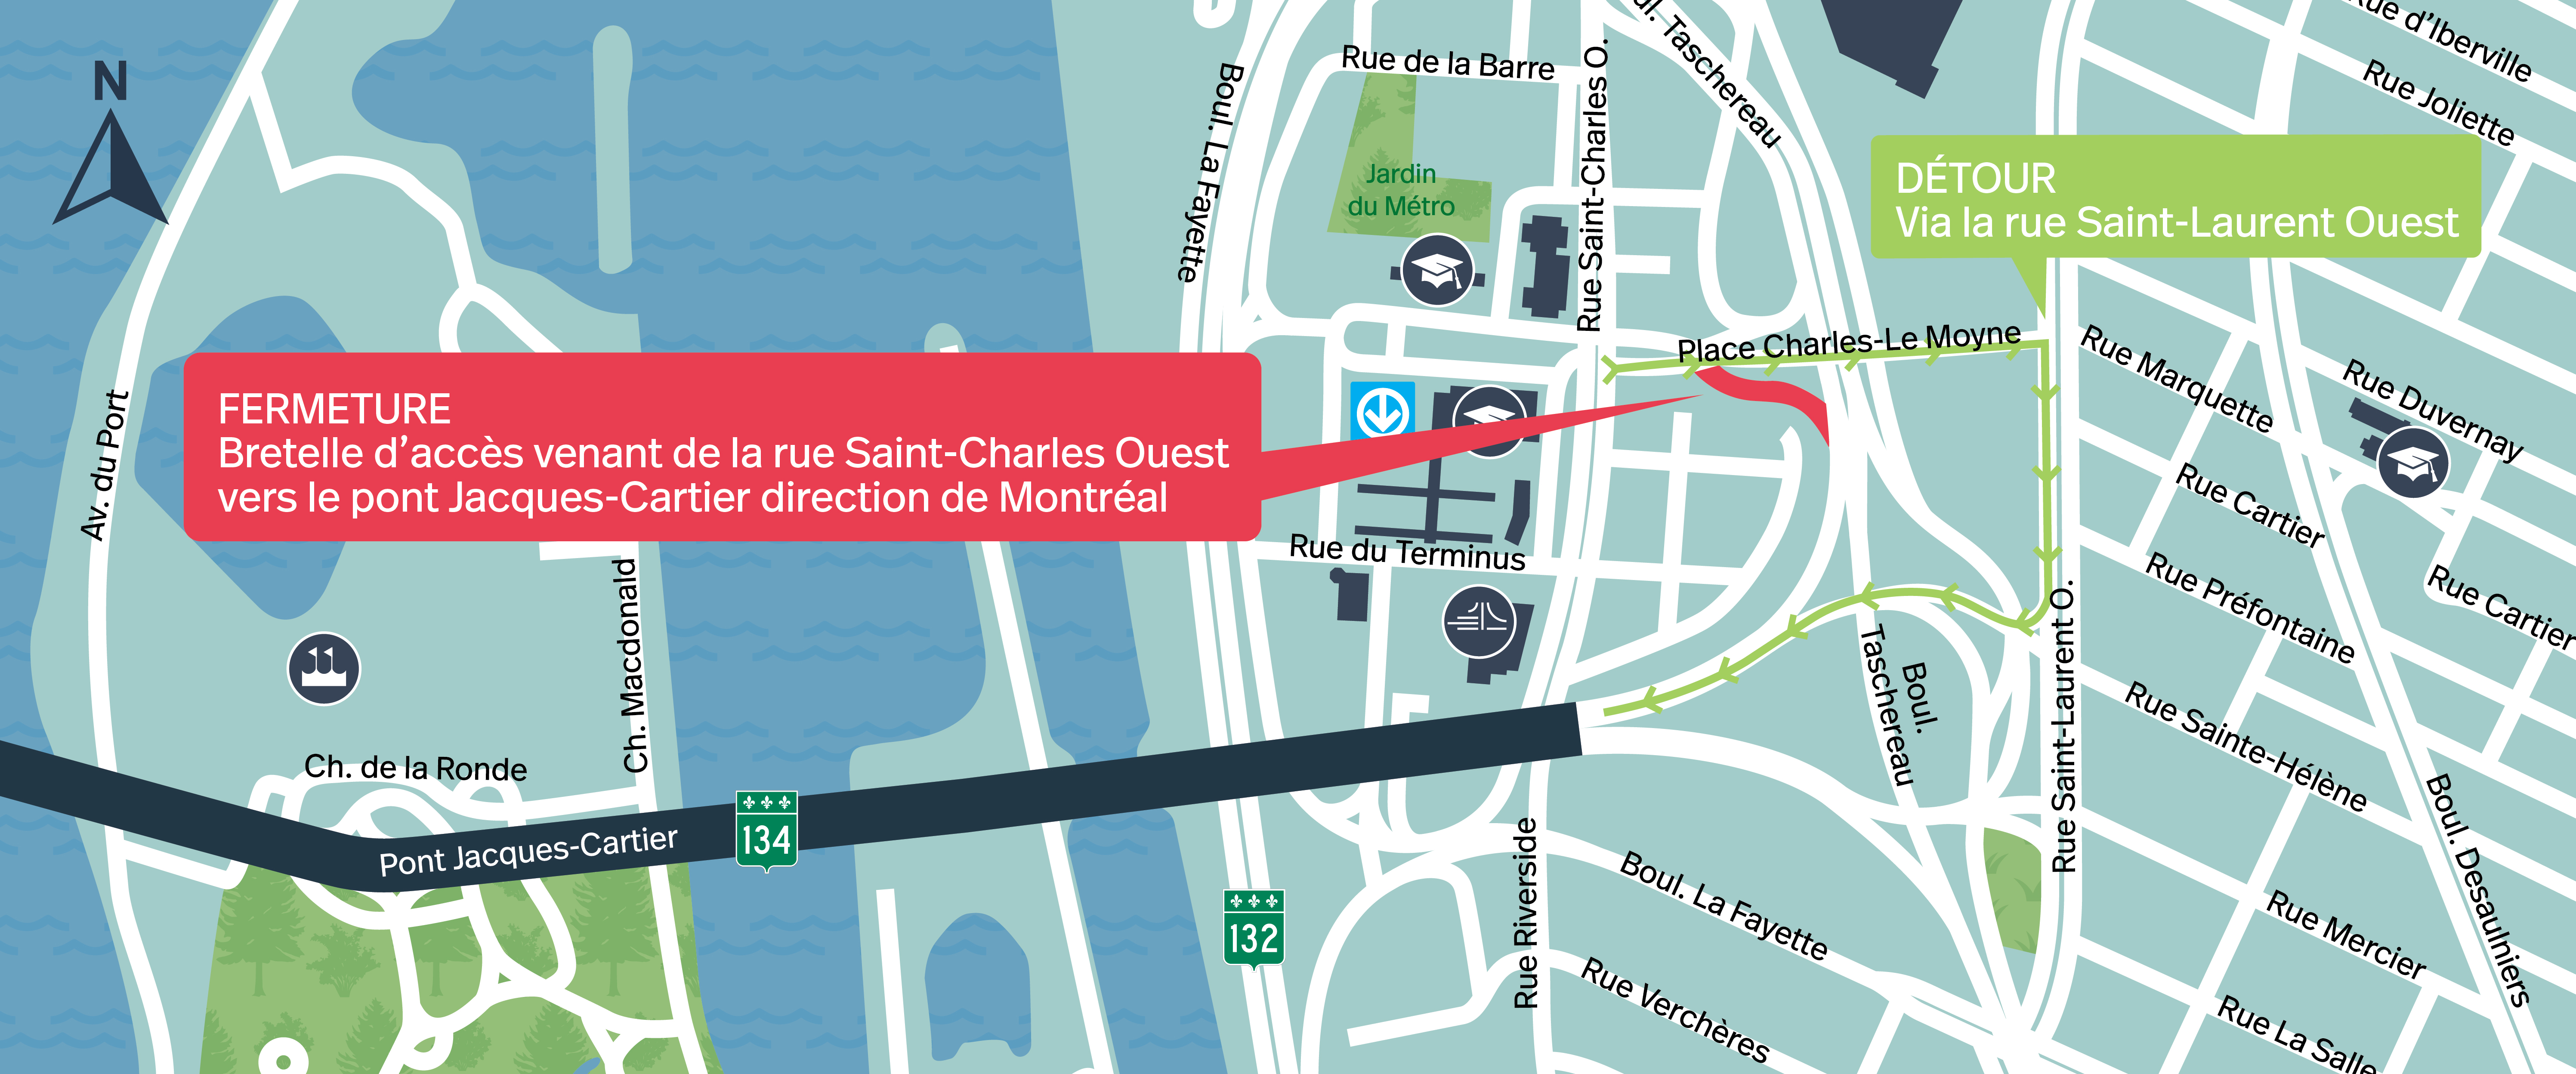 Pont Jacques-Cartier | Fermeture complète de nuit de la bretelle d’accès de Place Charles-Le Moyne, 10 novembre